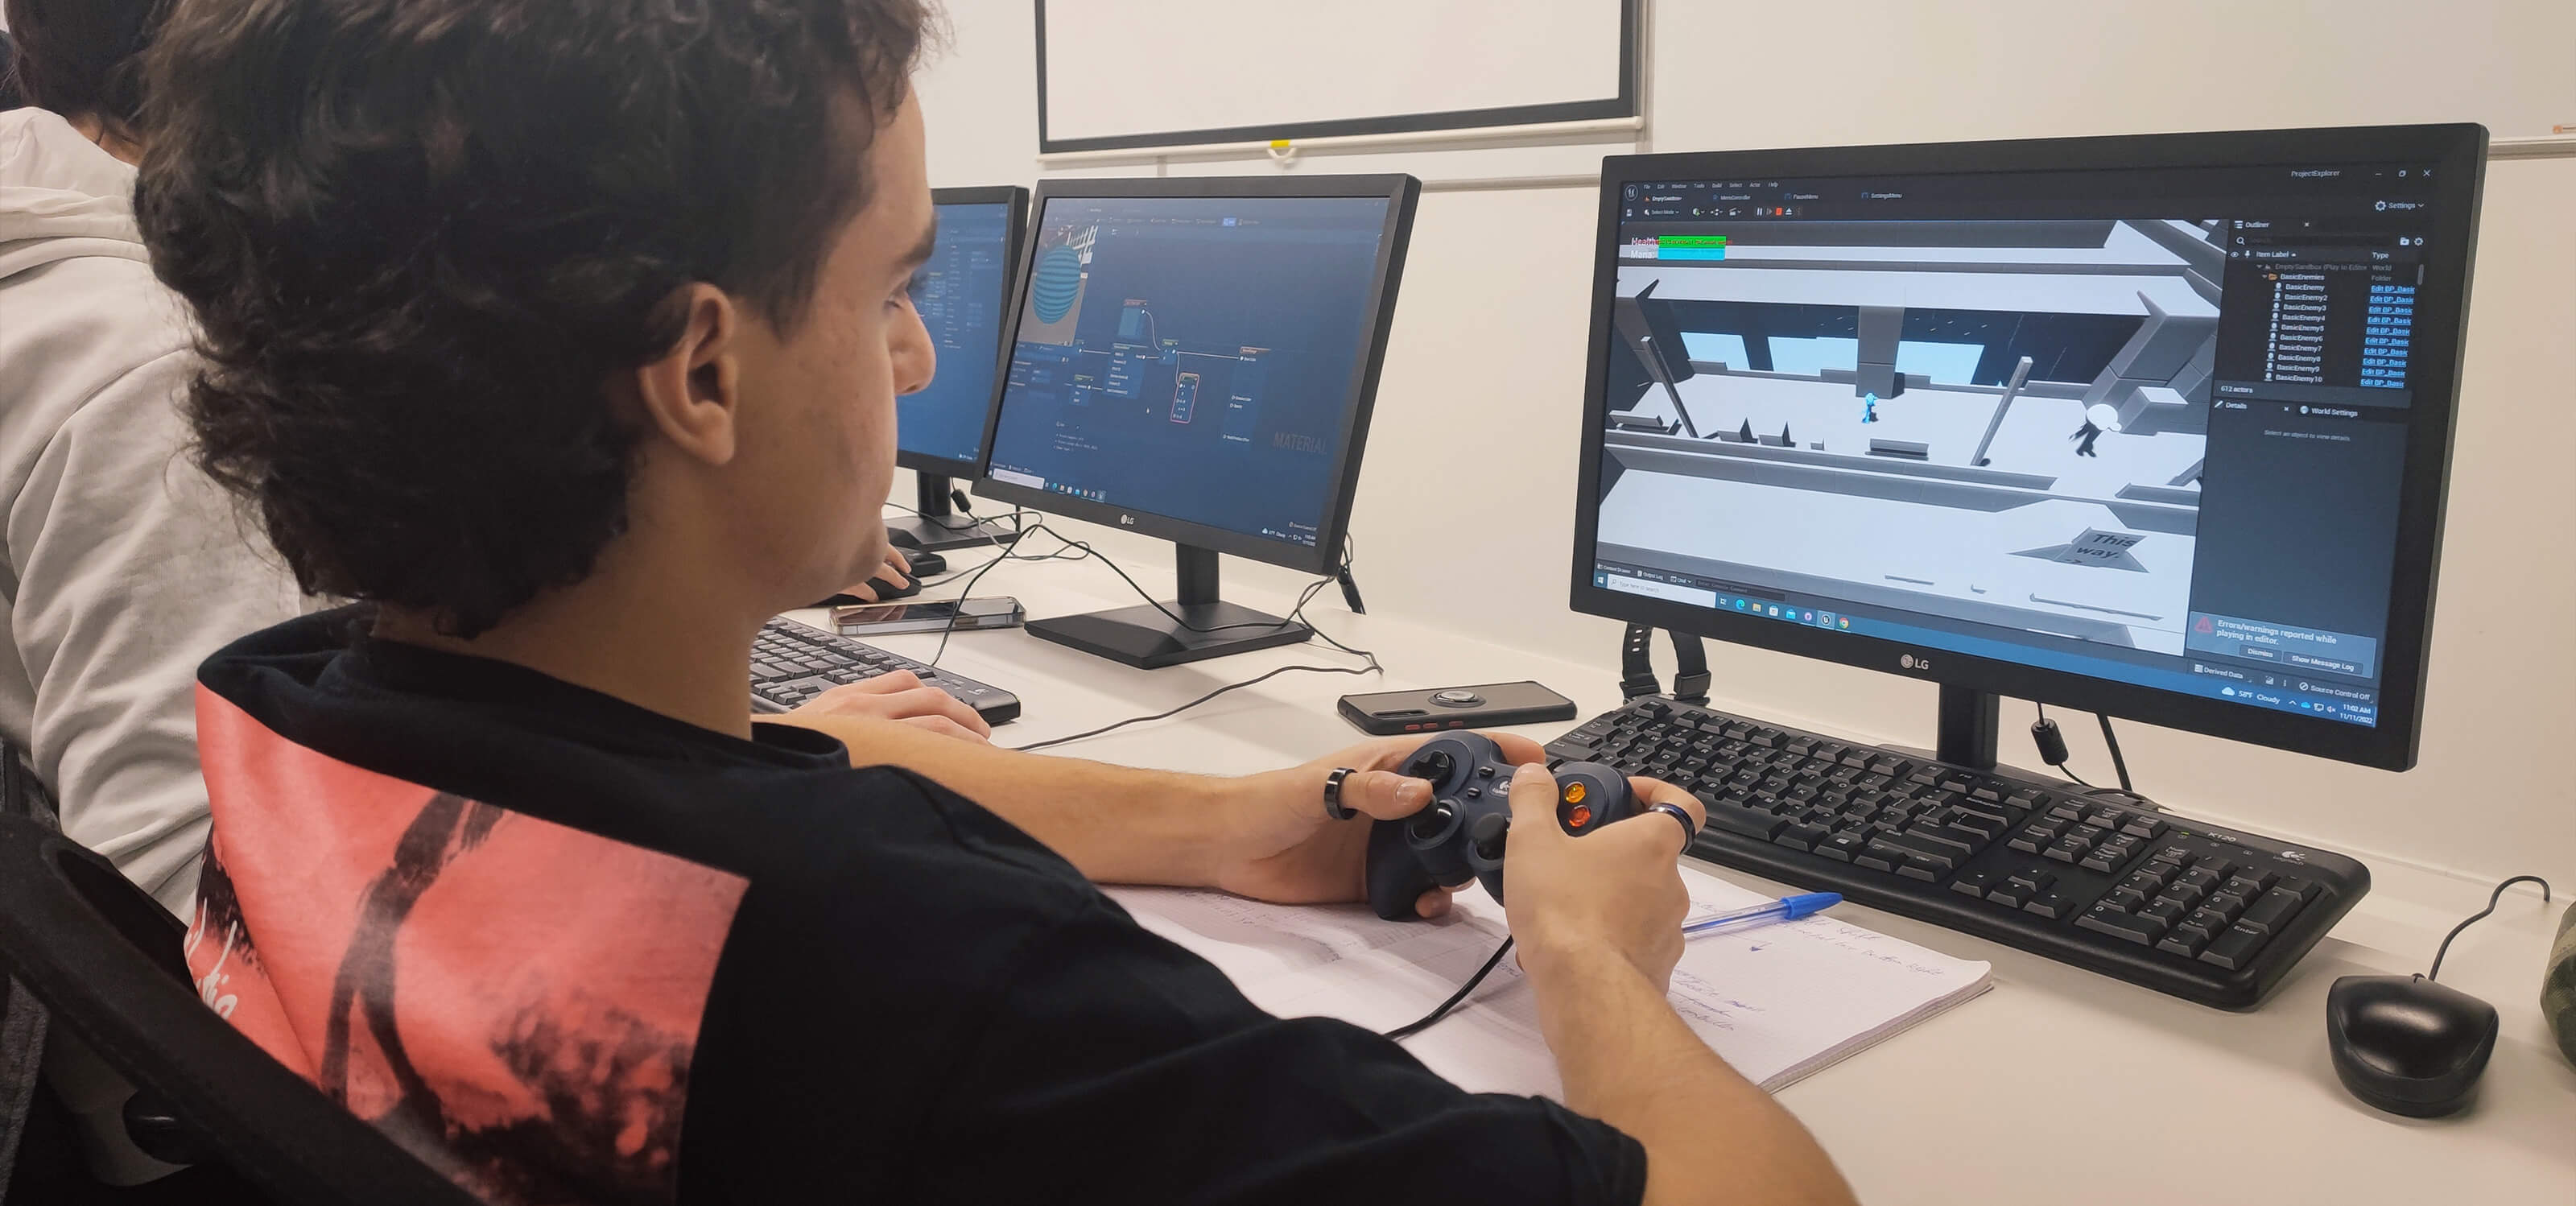 Un estudiante usa un mando para probar una versión inicial de un videojuego en el que está trabajando.